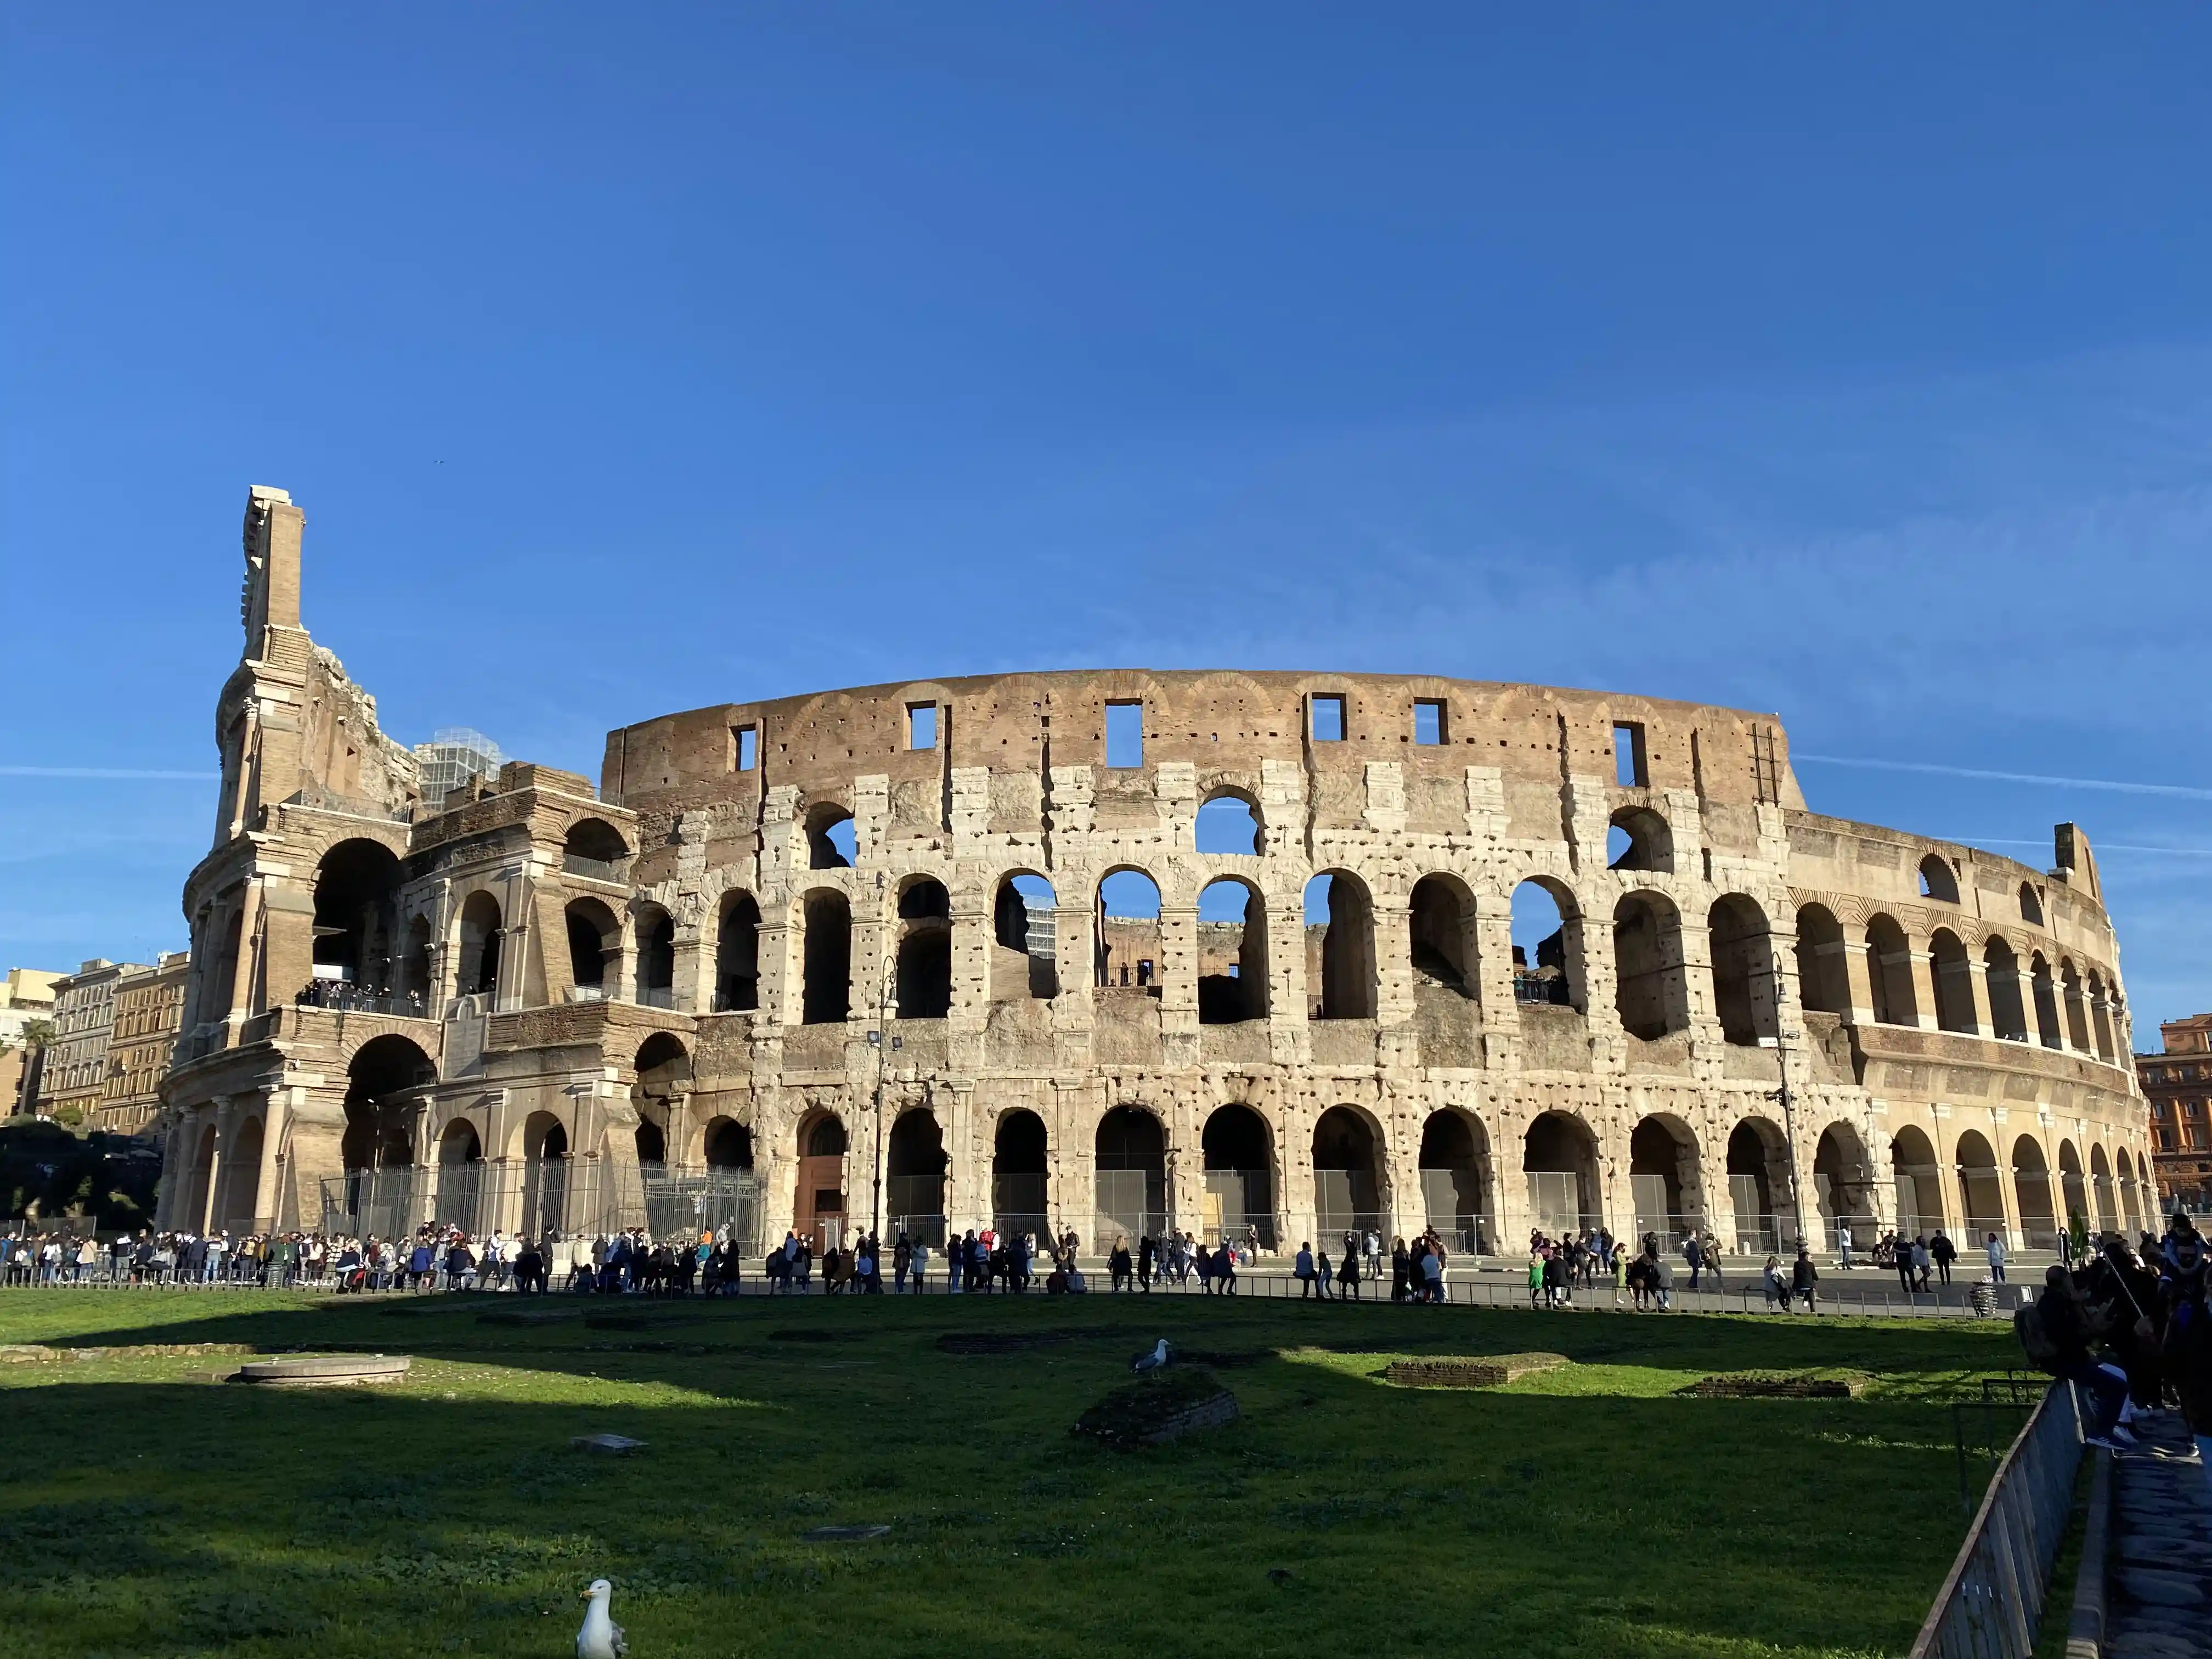 The Coloseum in Rome